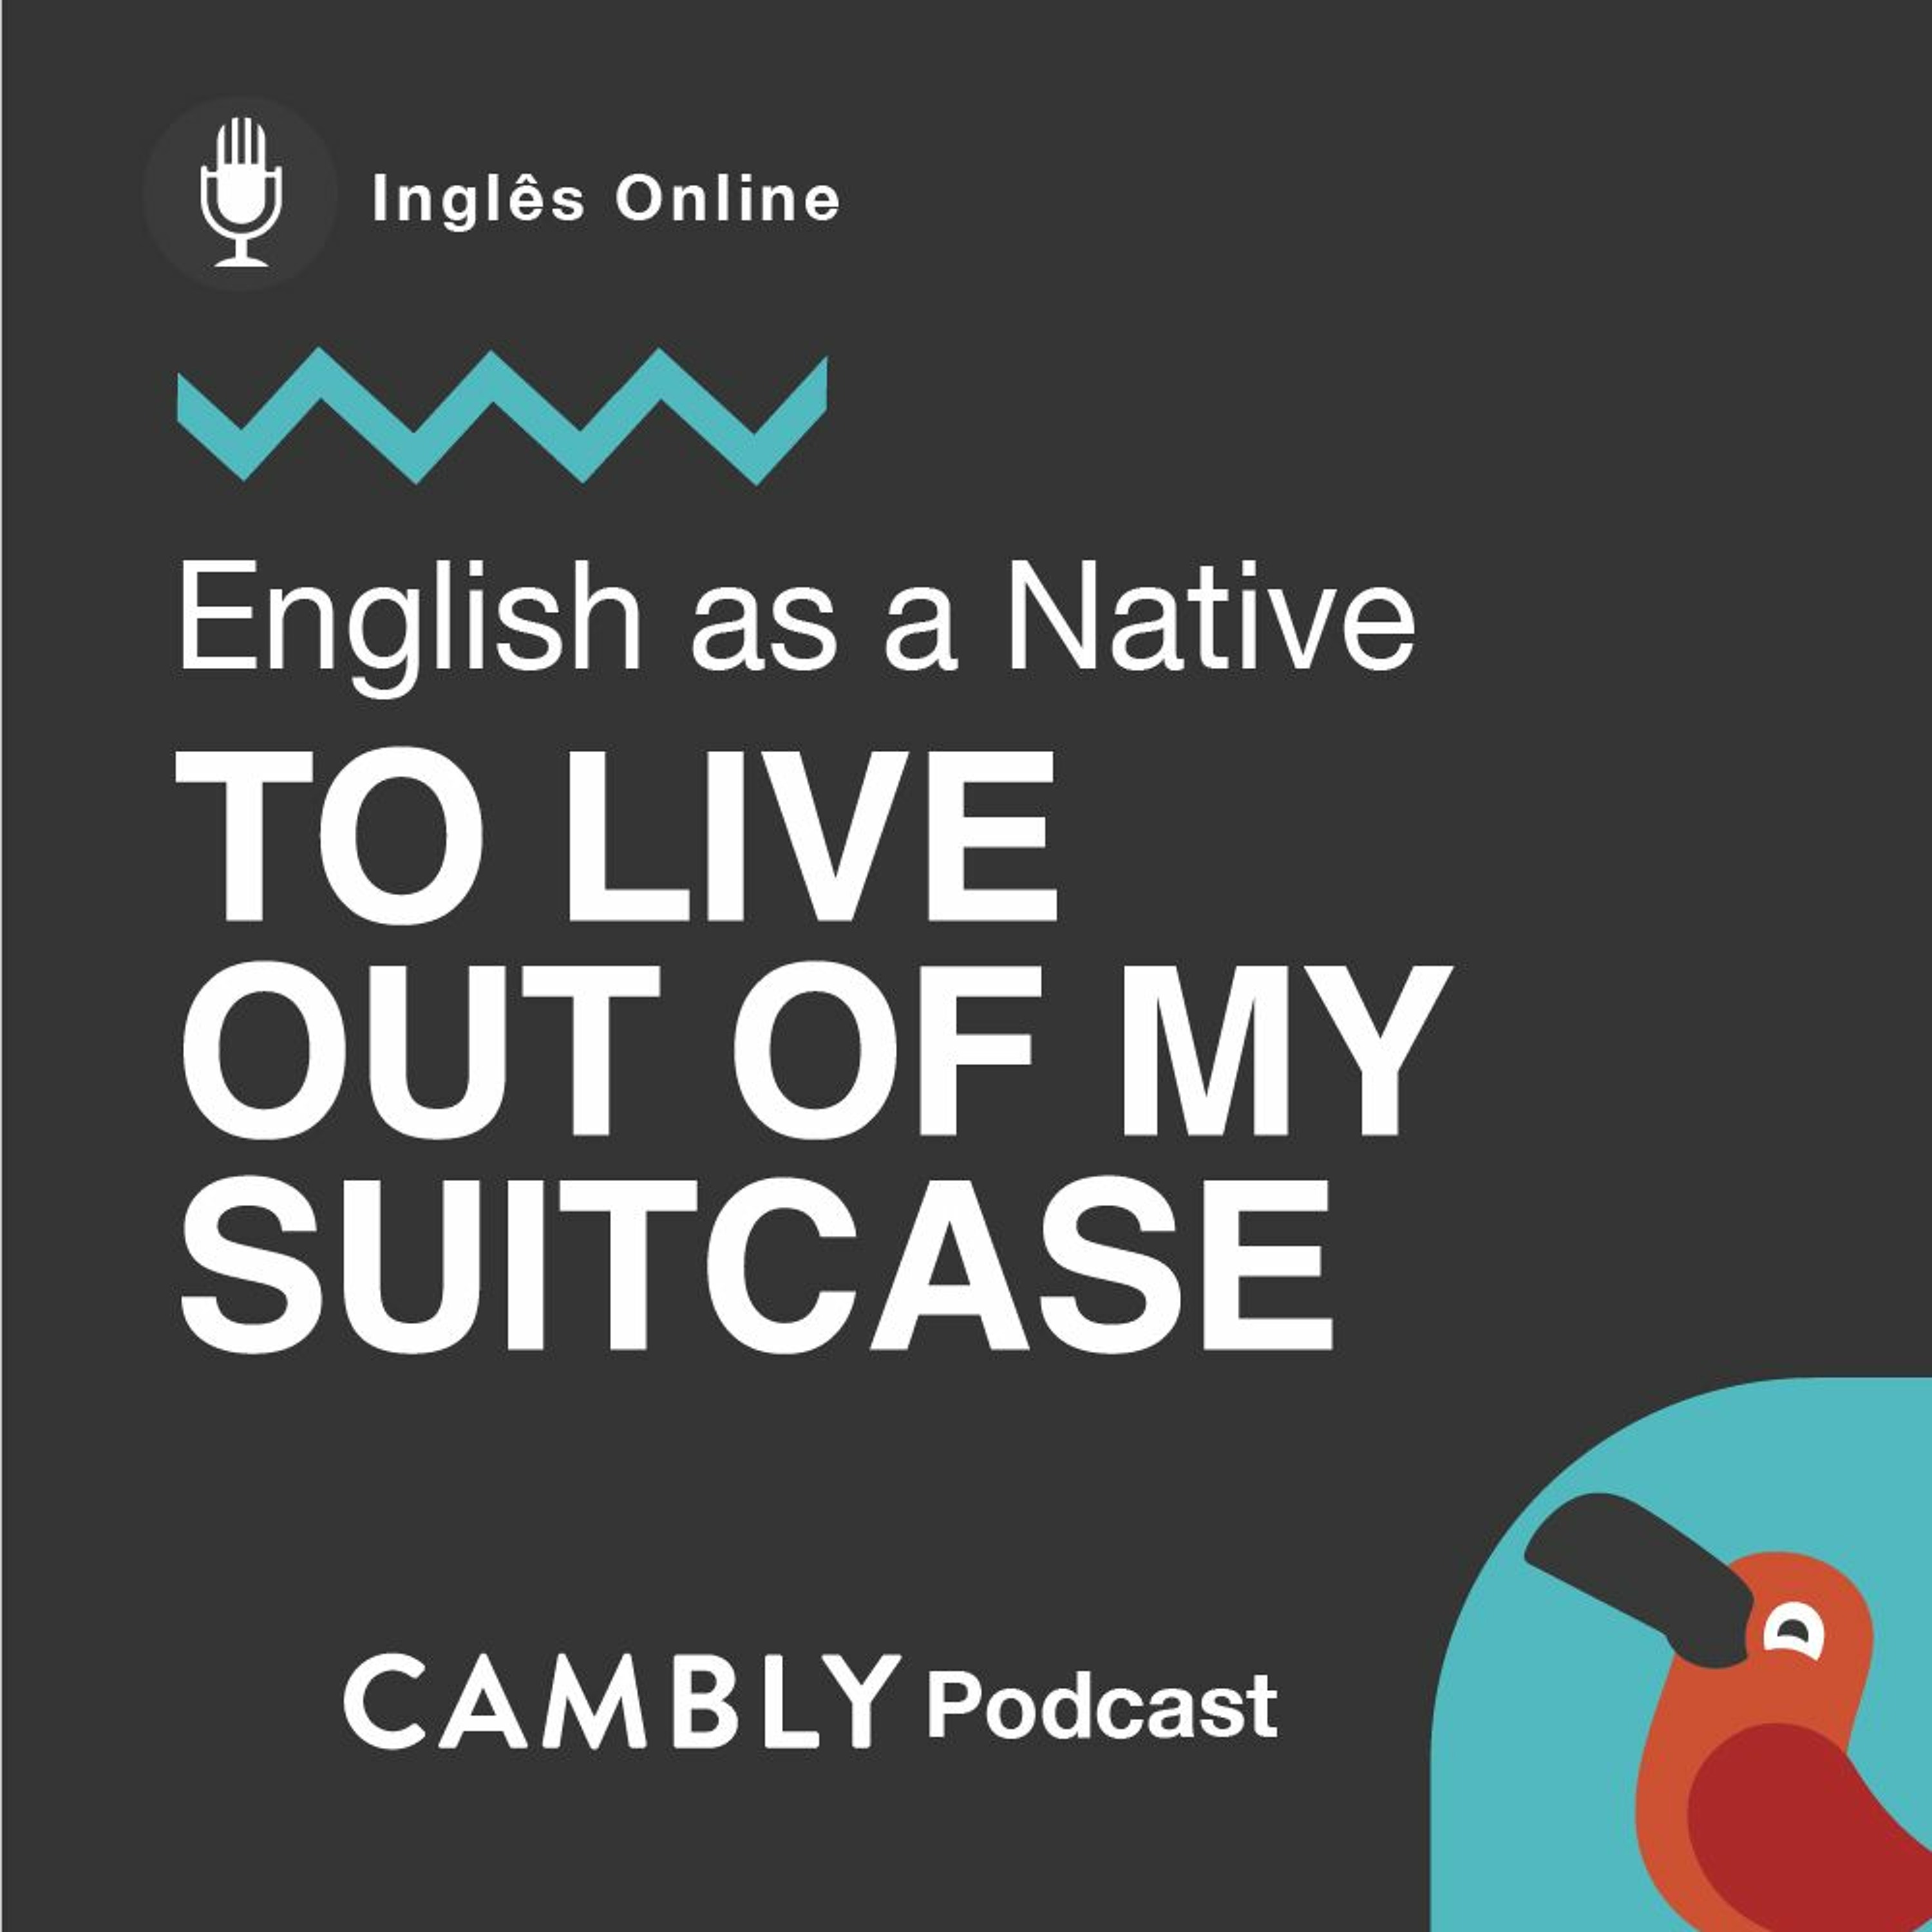 Ep 260. O que significa "To live out of my suitcase" em português| English as a Native